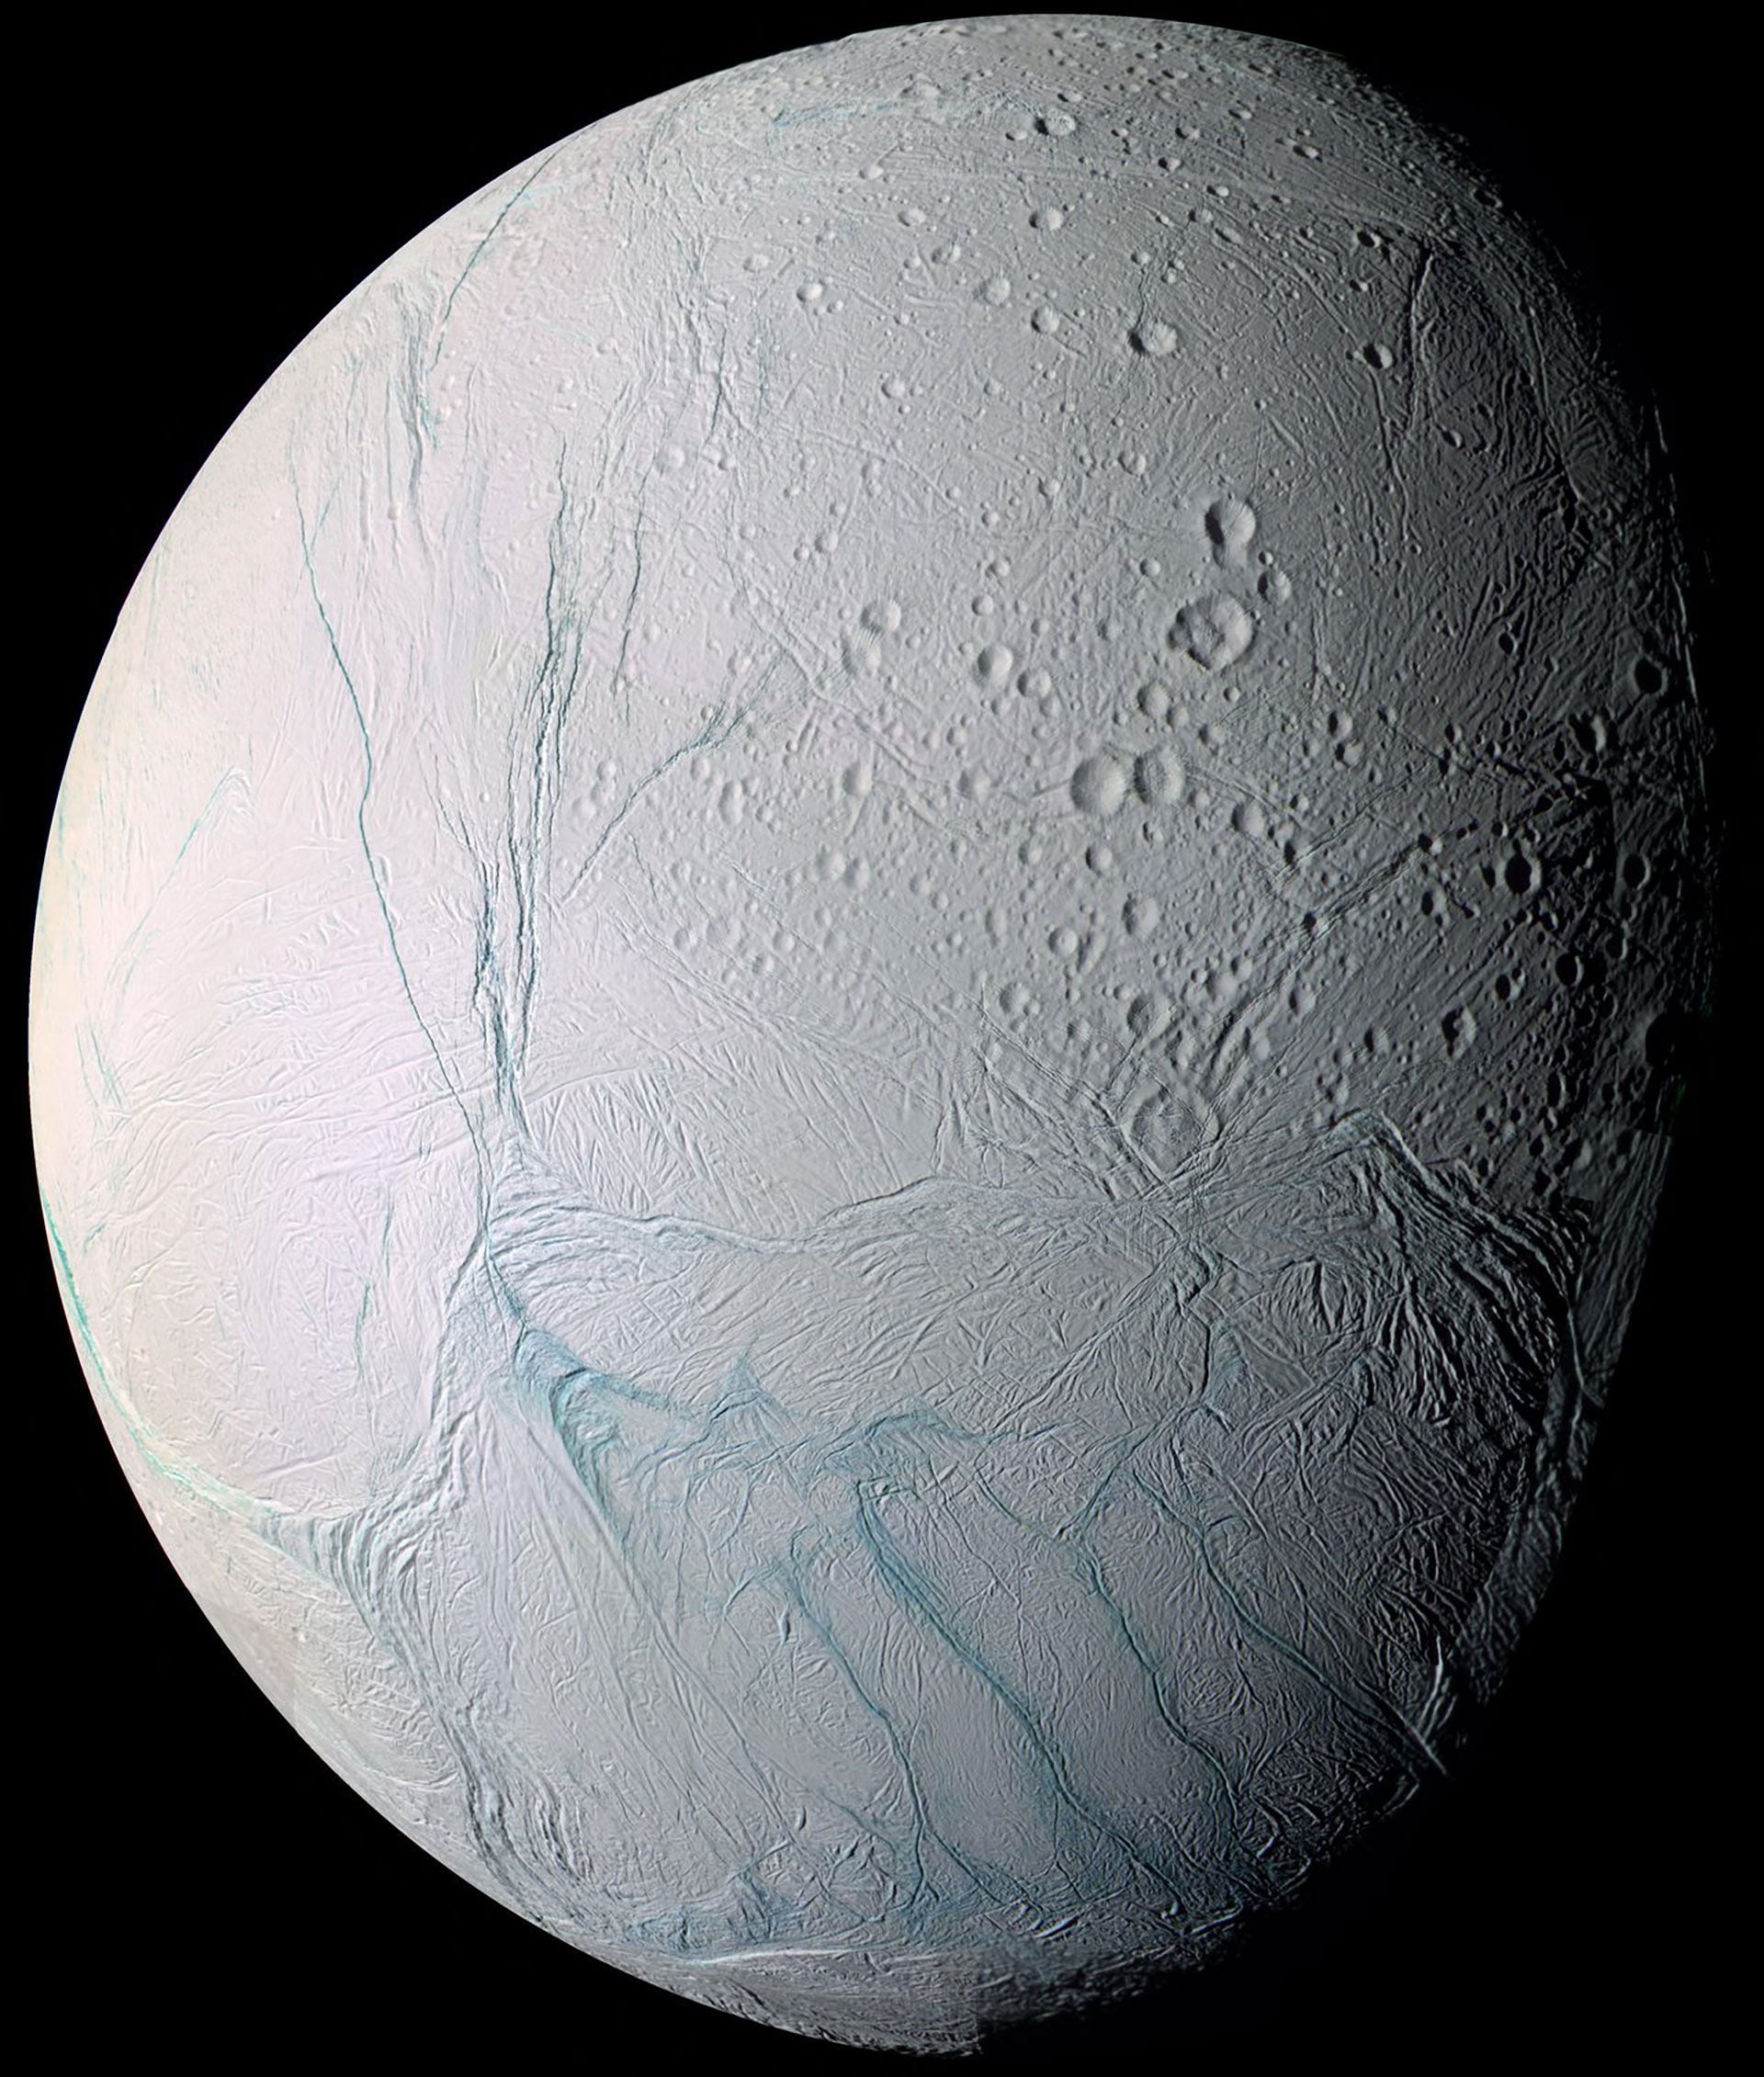 El estudio reveló la presencia de fósforo, uno de los componentes clave para el surgimiento de vida, en el océano debajo de la superficie helada de Encélado, una de las lunas de Saturno (AFP)